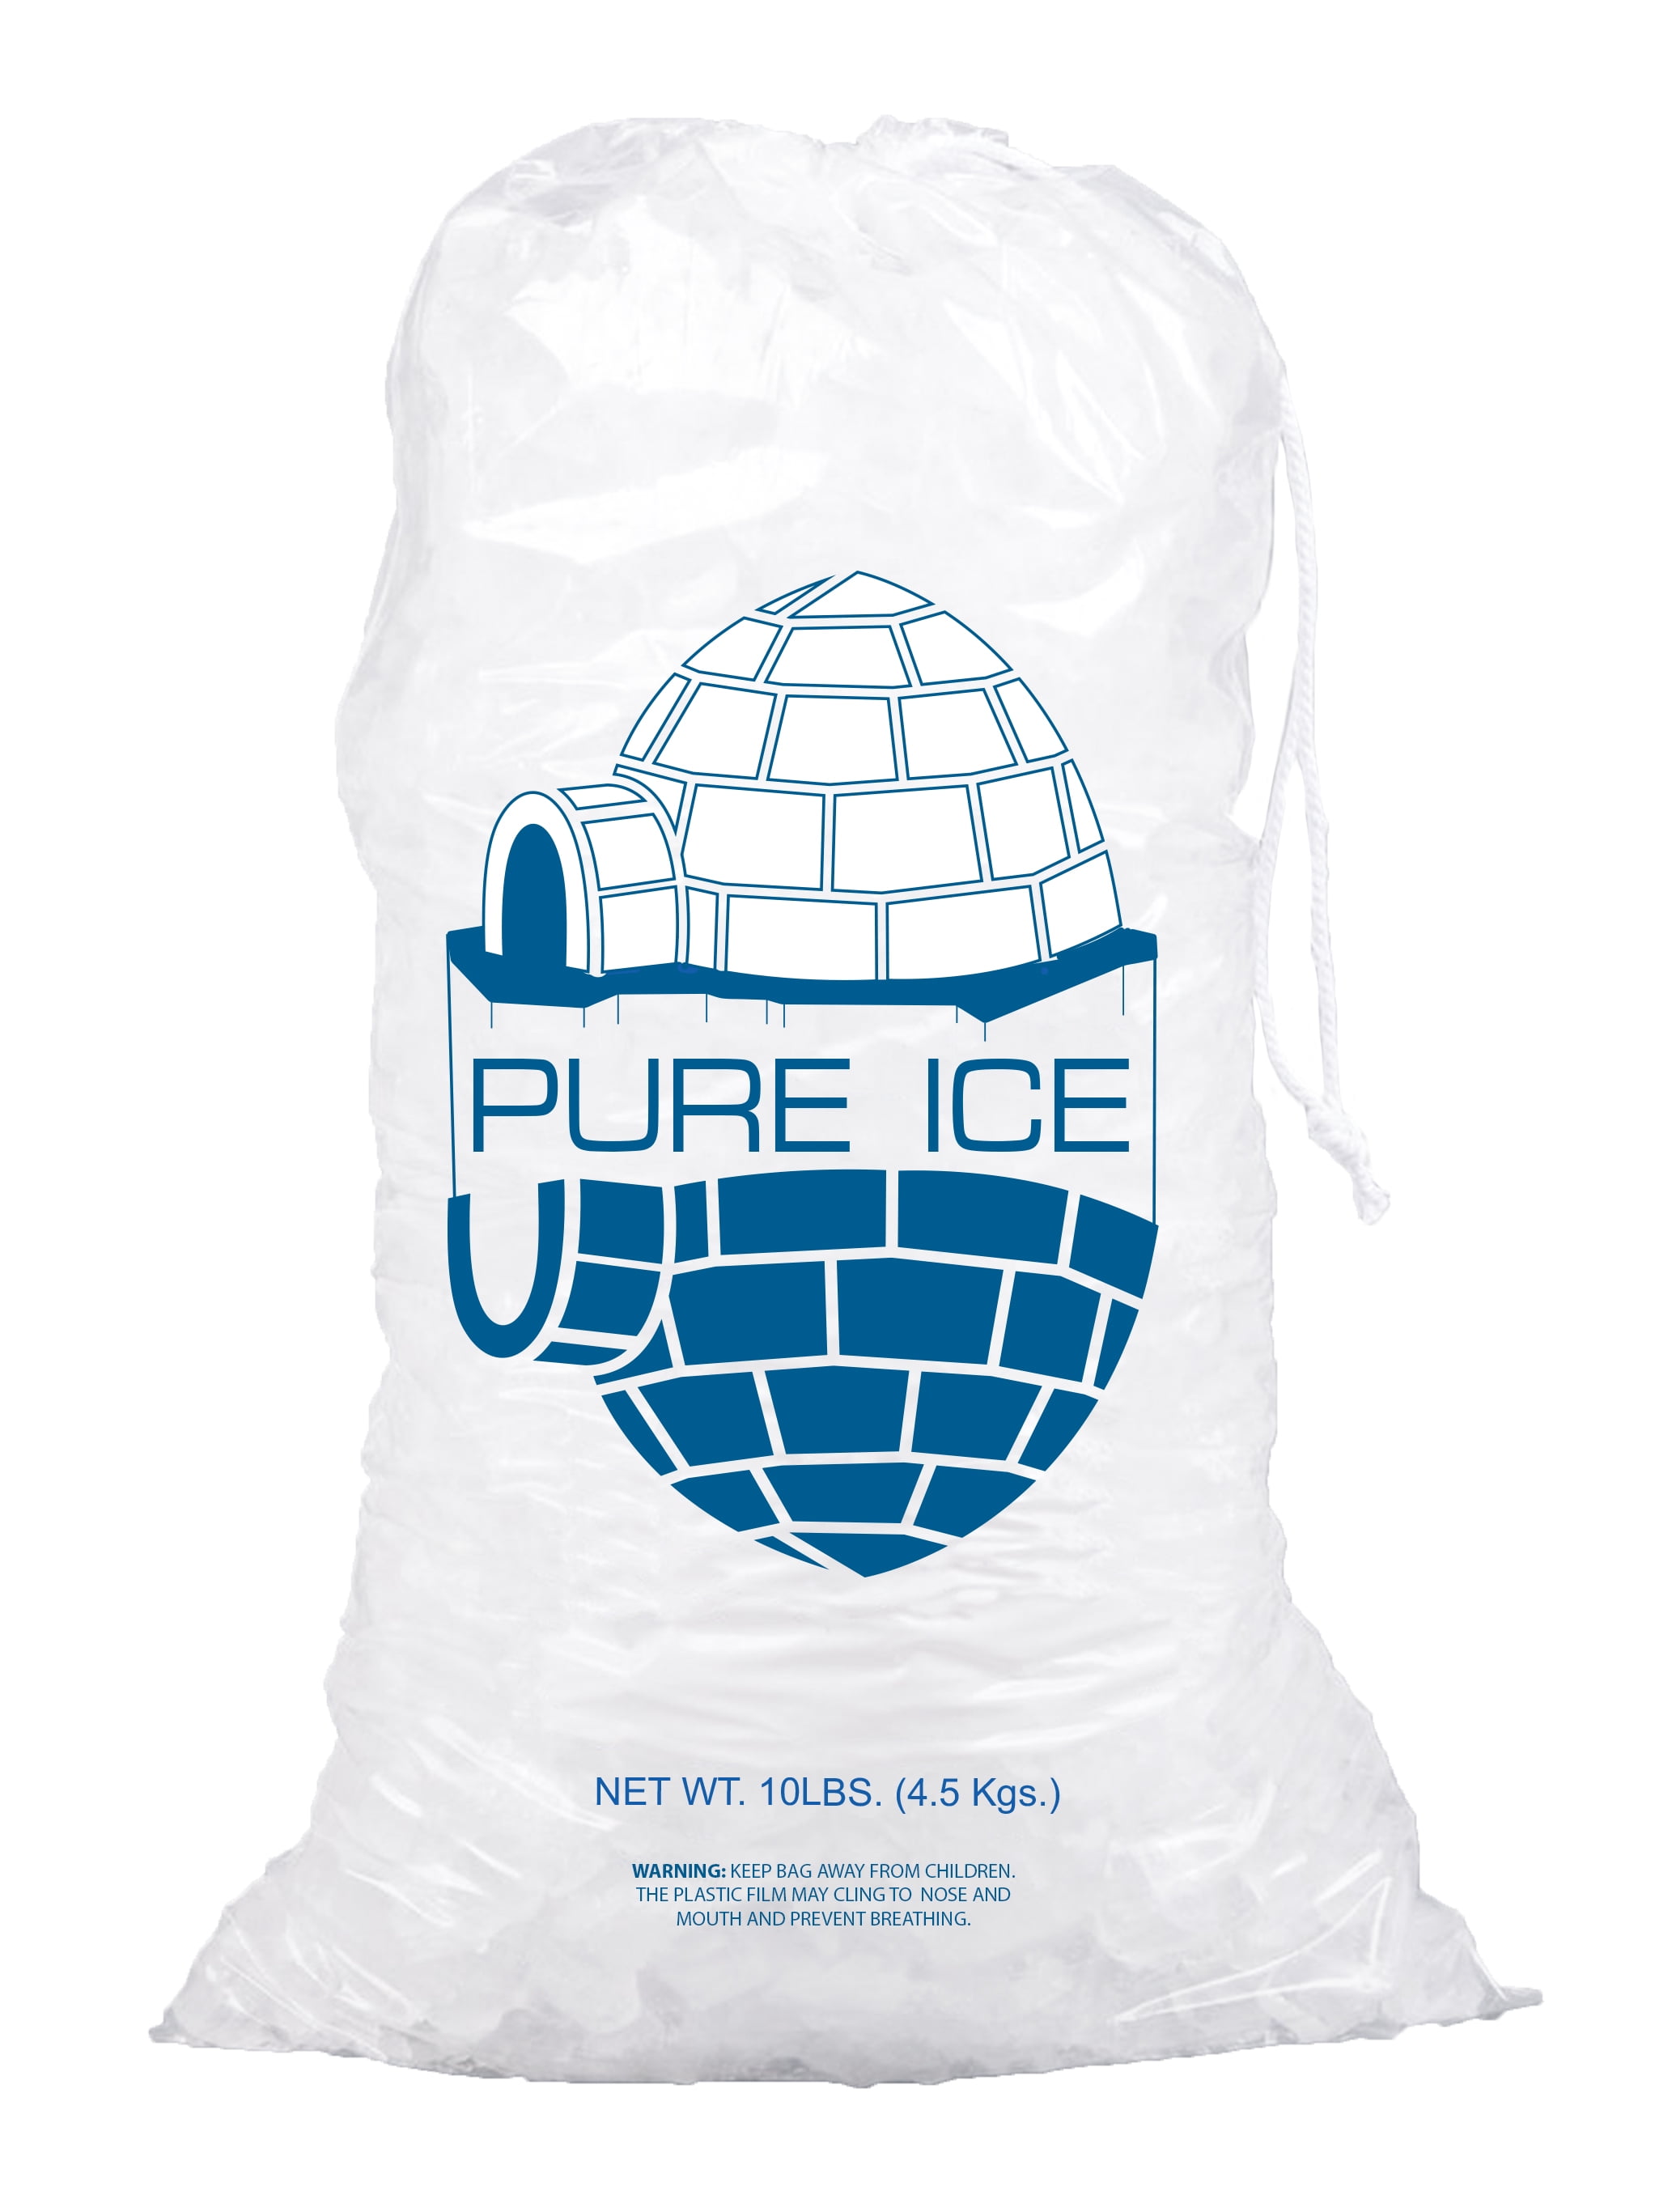 ICE BAG BIG SIZE 52X27 (20.47x10.63) - ORANGE STRIPES - Each